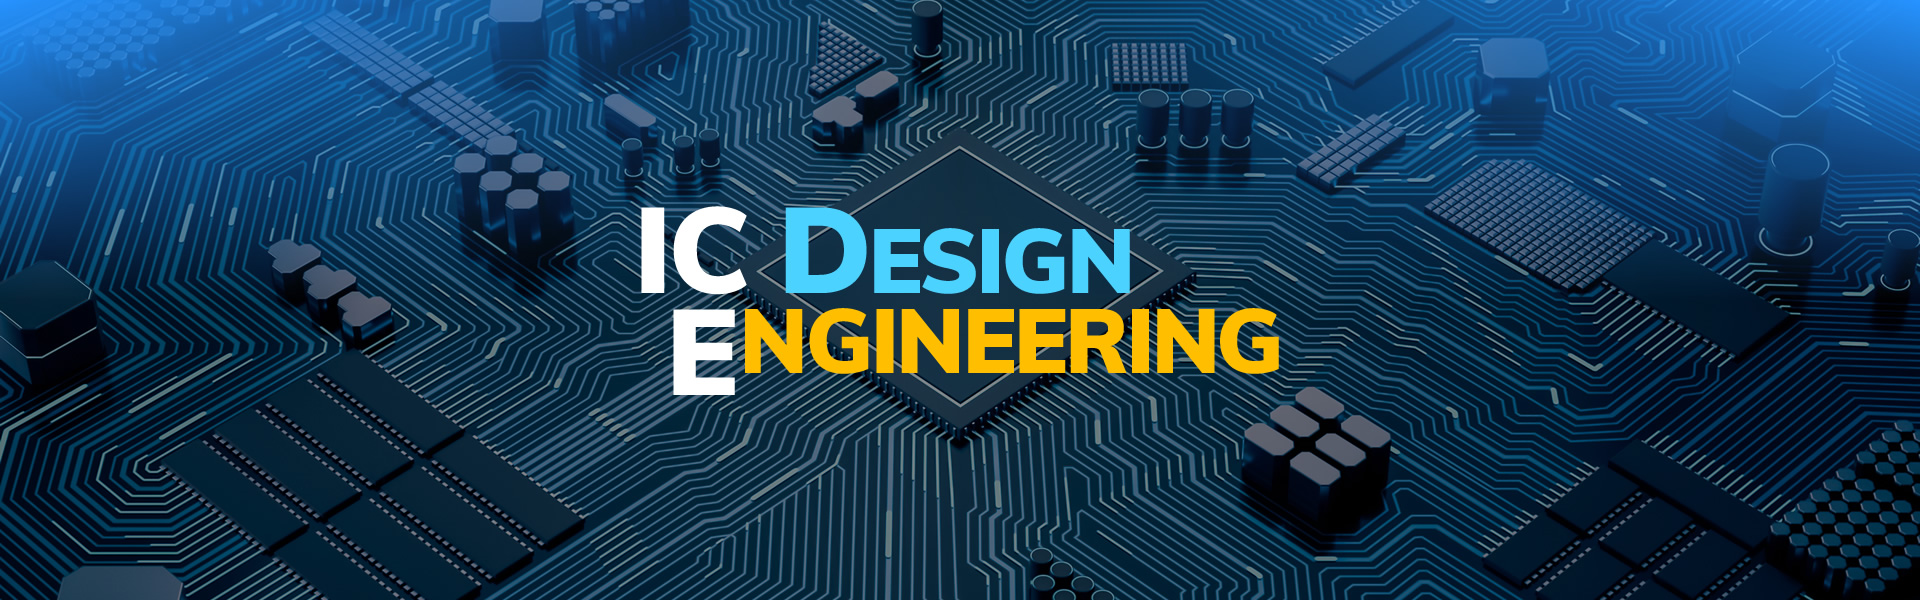 MSc in IC Design Engineering